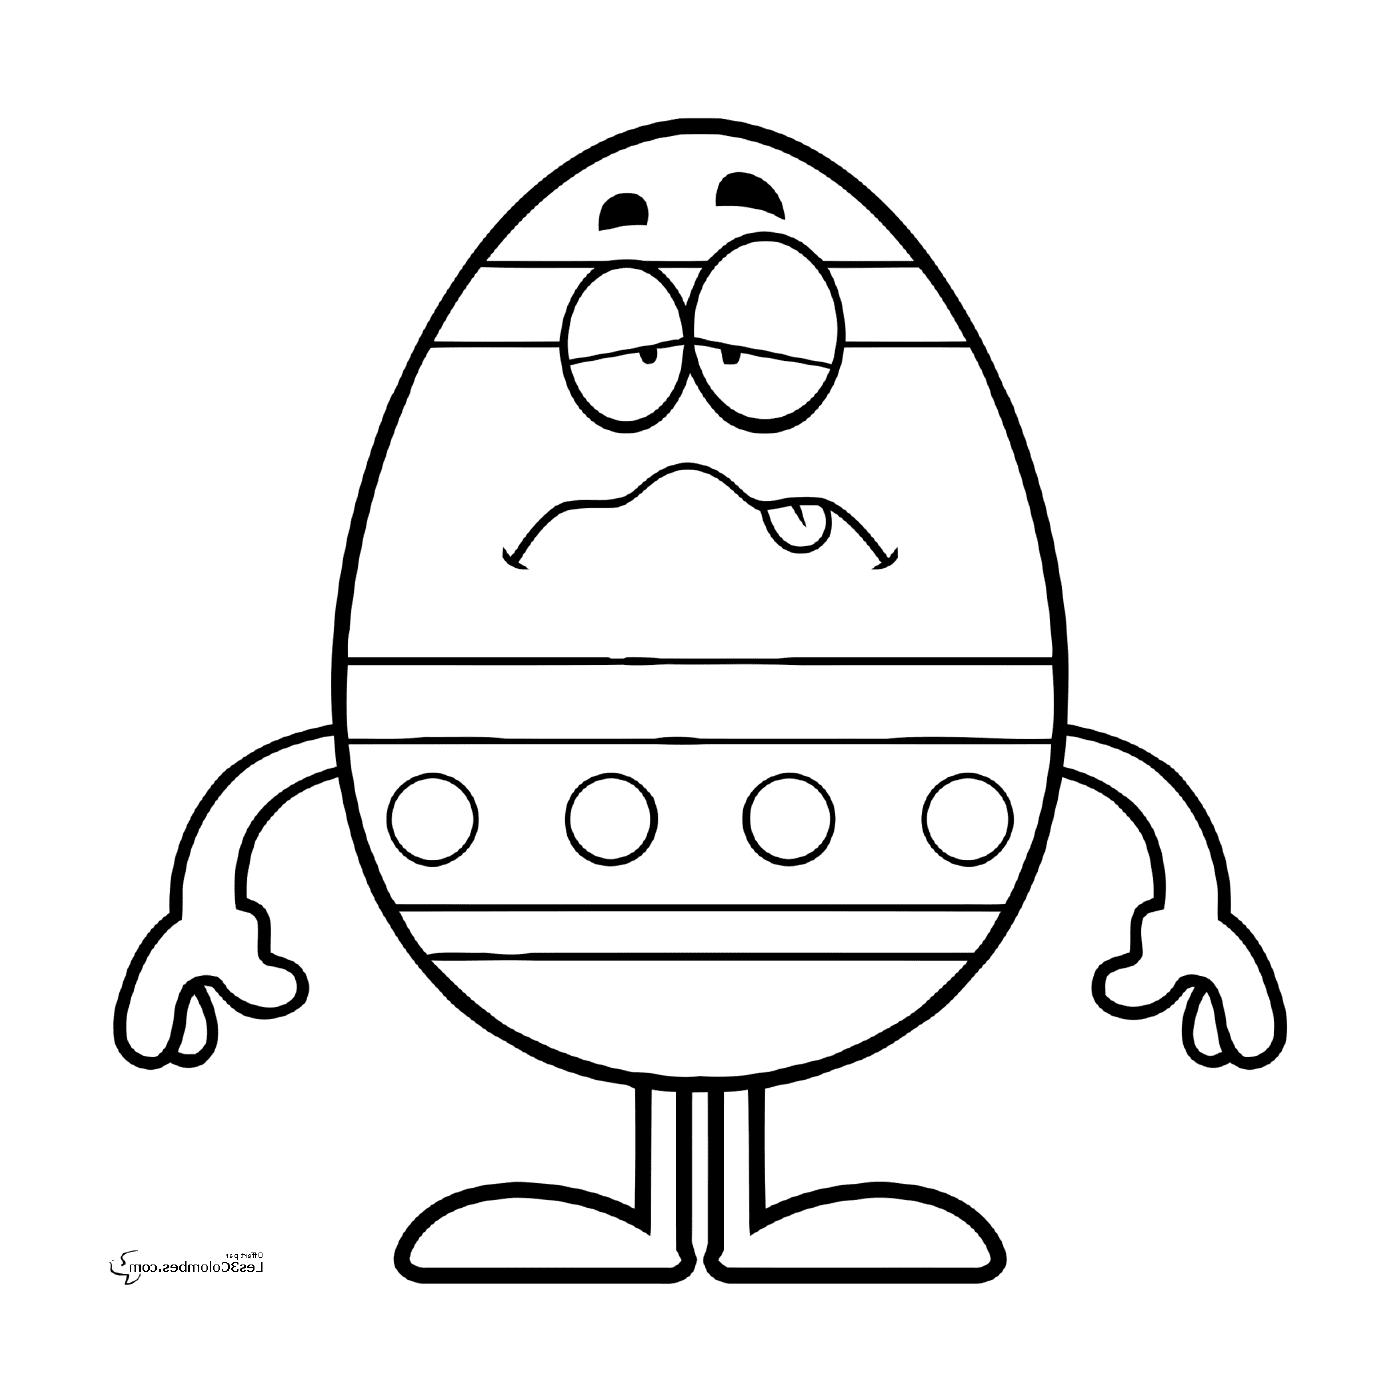  Easter 196, a sad Easter egg 